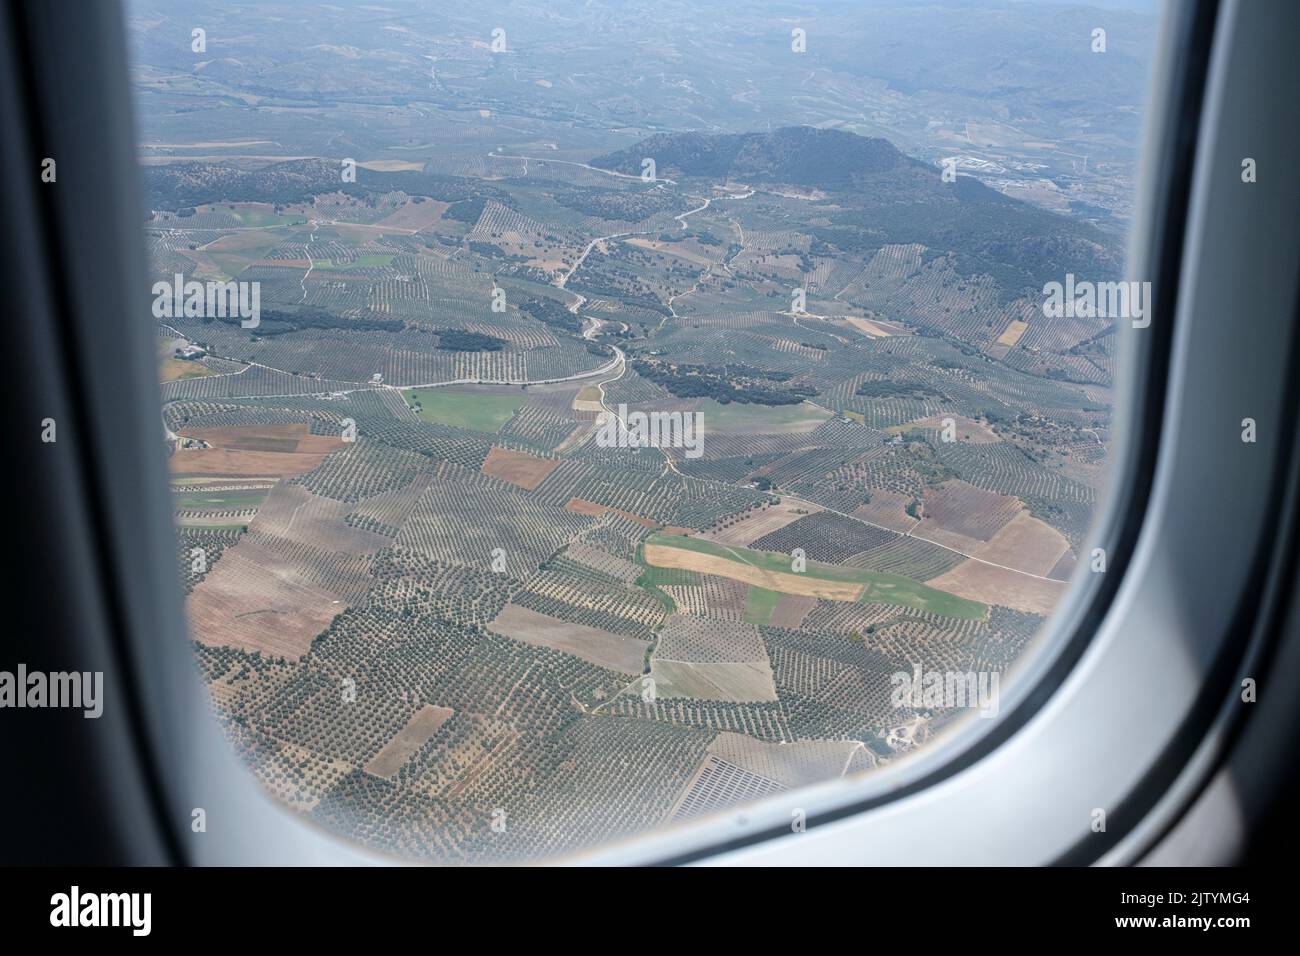 Par la fenêtre de l'intérieur de la cabine, au-dessus du paysage, en voyageant en avion de Madrid à grenade, sur un avion Bombardier CRJ1000, en Espagne Banque D'Images